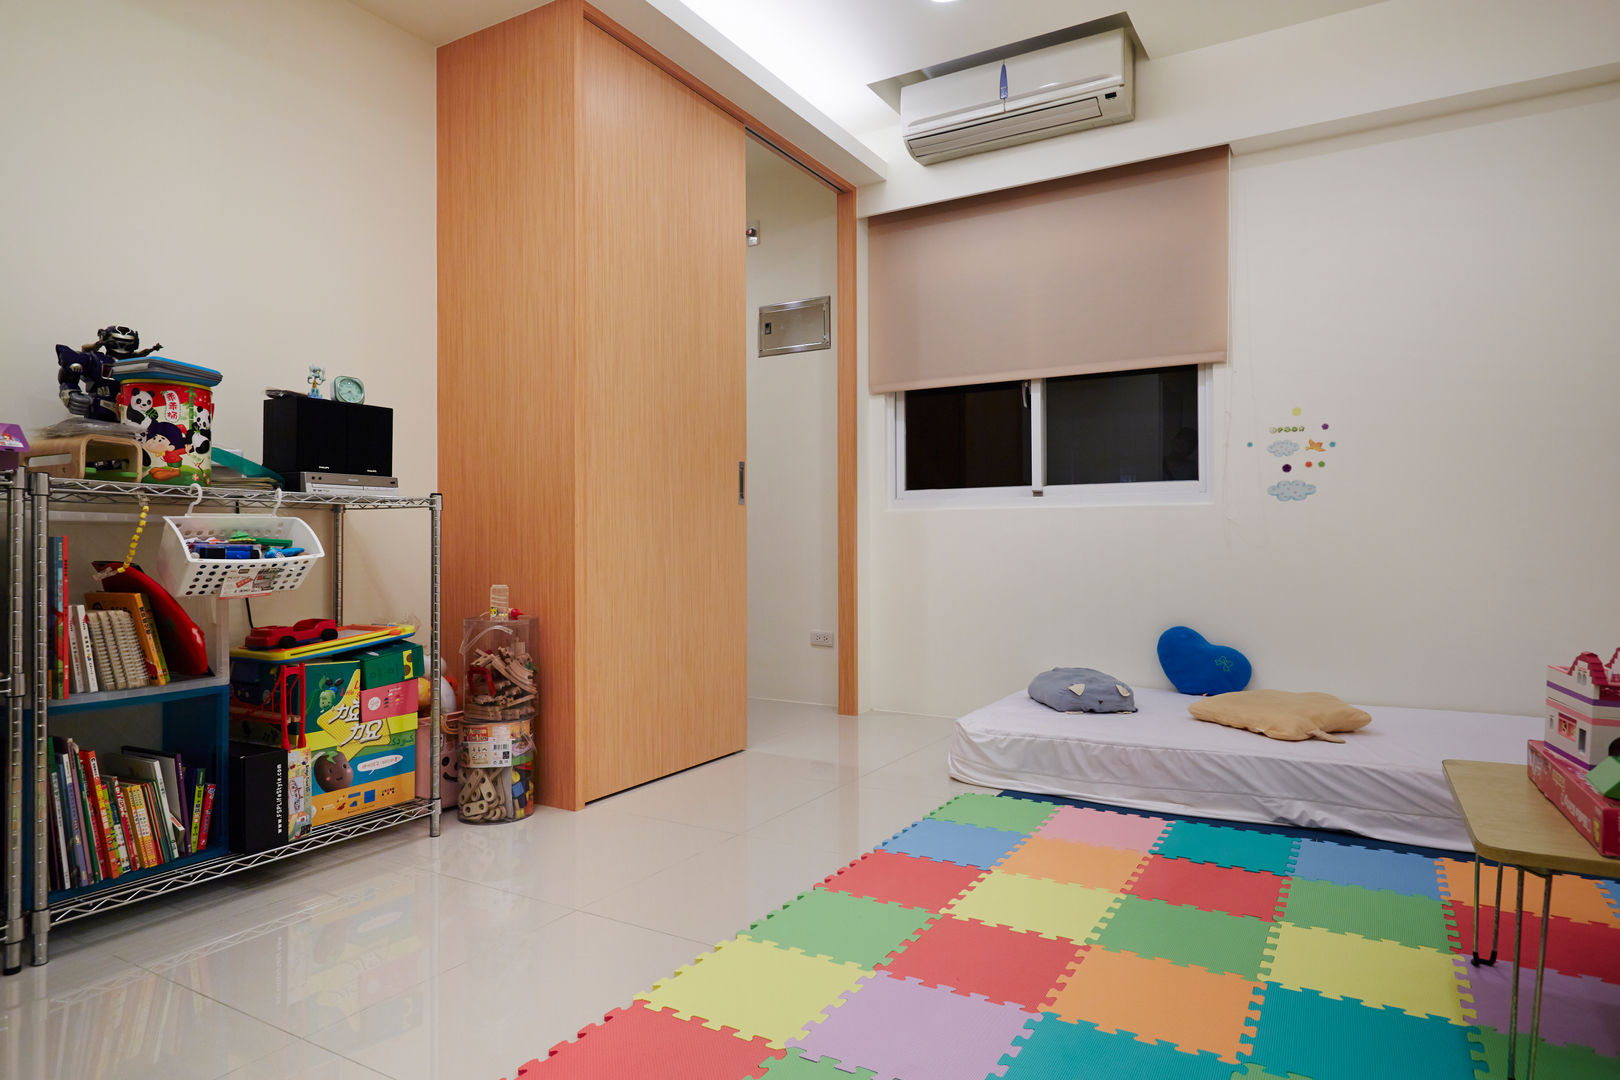 孩子需要的是活動的空間而不是精緻的裝飾 弘悅國際室內裝修有限公司 Nursery/kid’s room Wood Wood effect